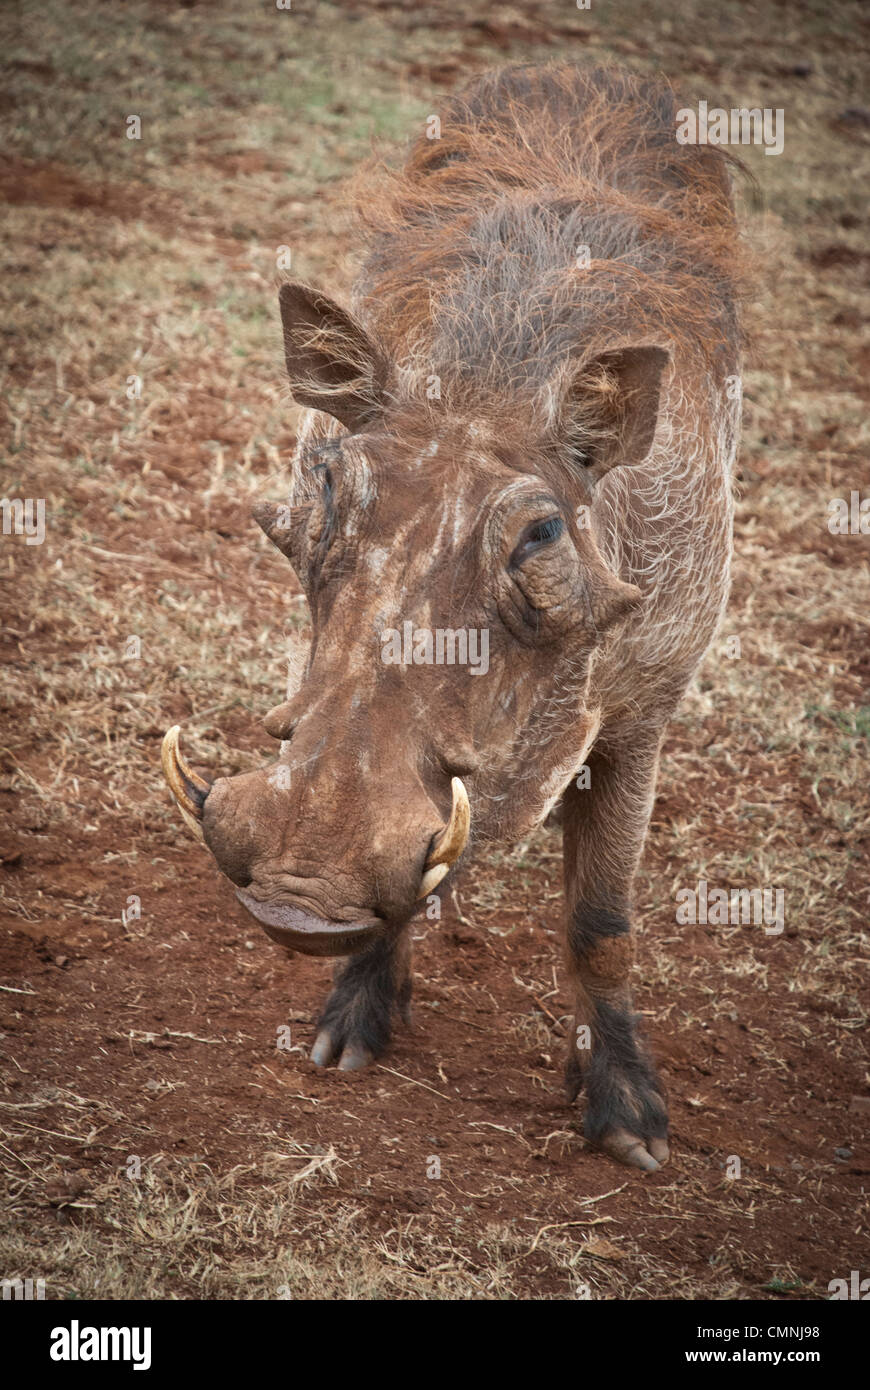 Close Up of a Warthog, Phacochoerus africanus, Giraffe Manor, Nairobi, Kenya, Africa Stock Photo